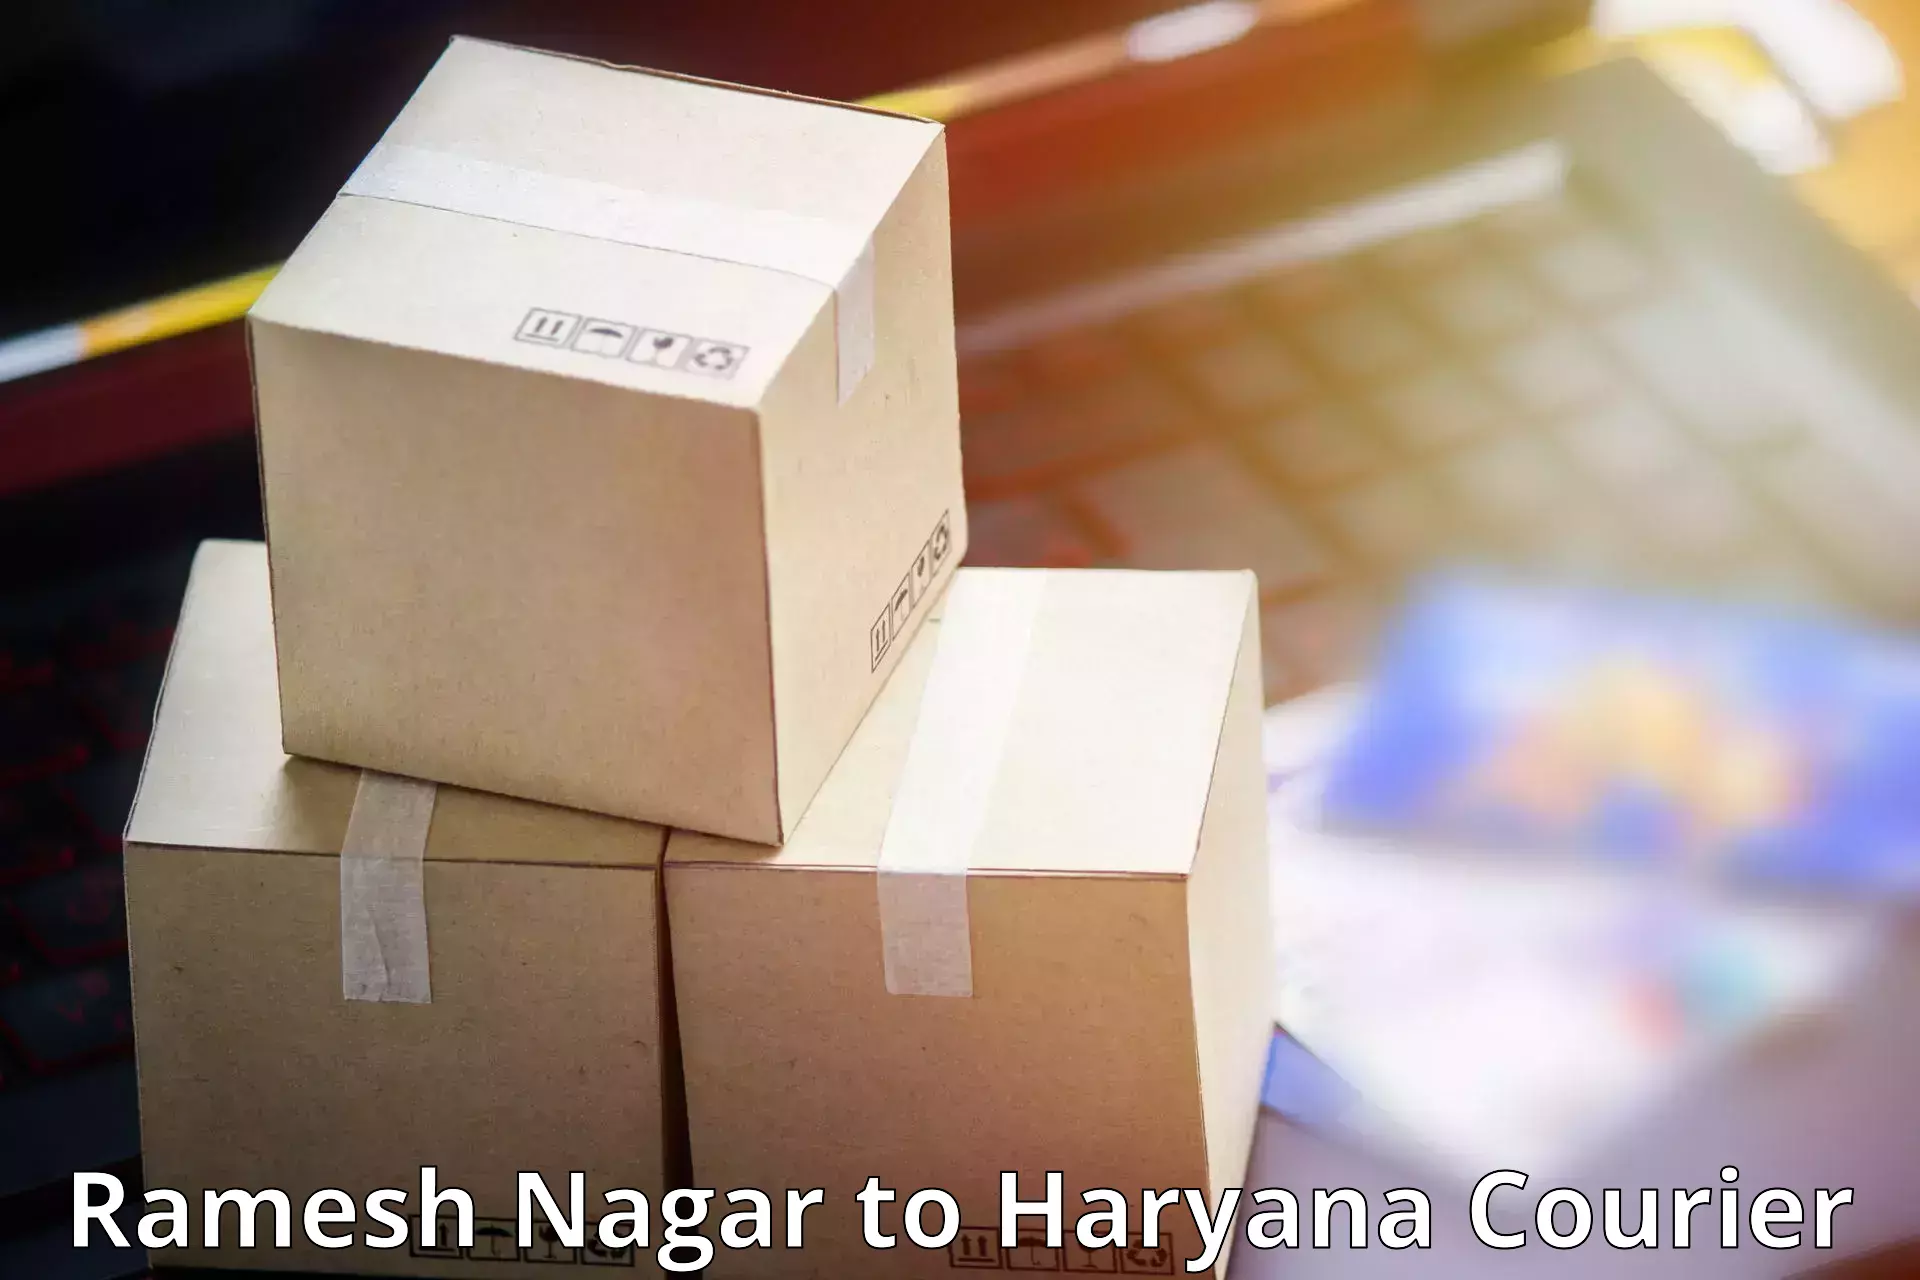 Regular parcel service Ramesh Nagar to Odhan